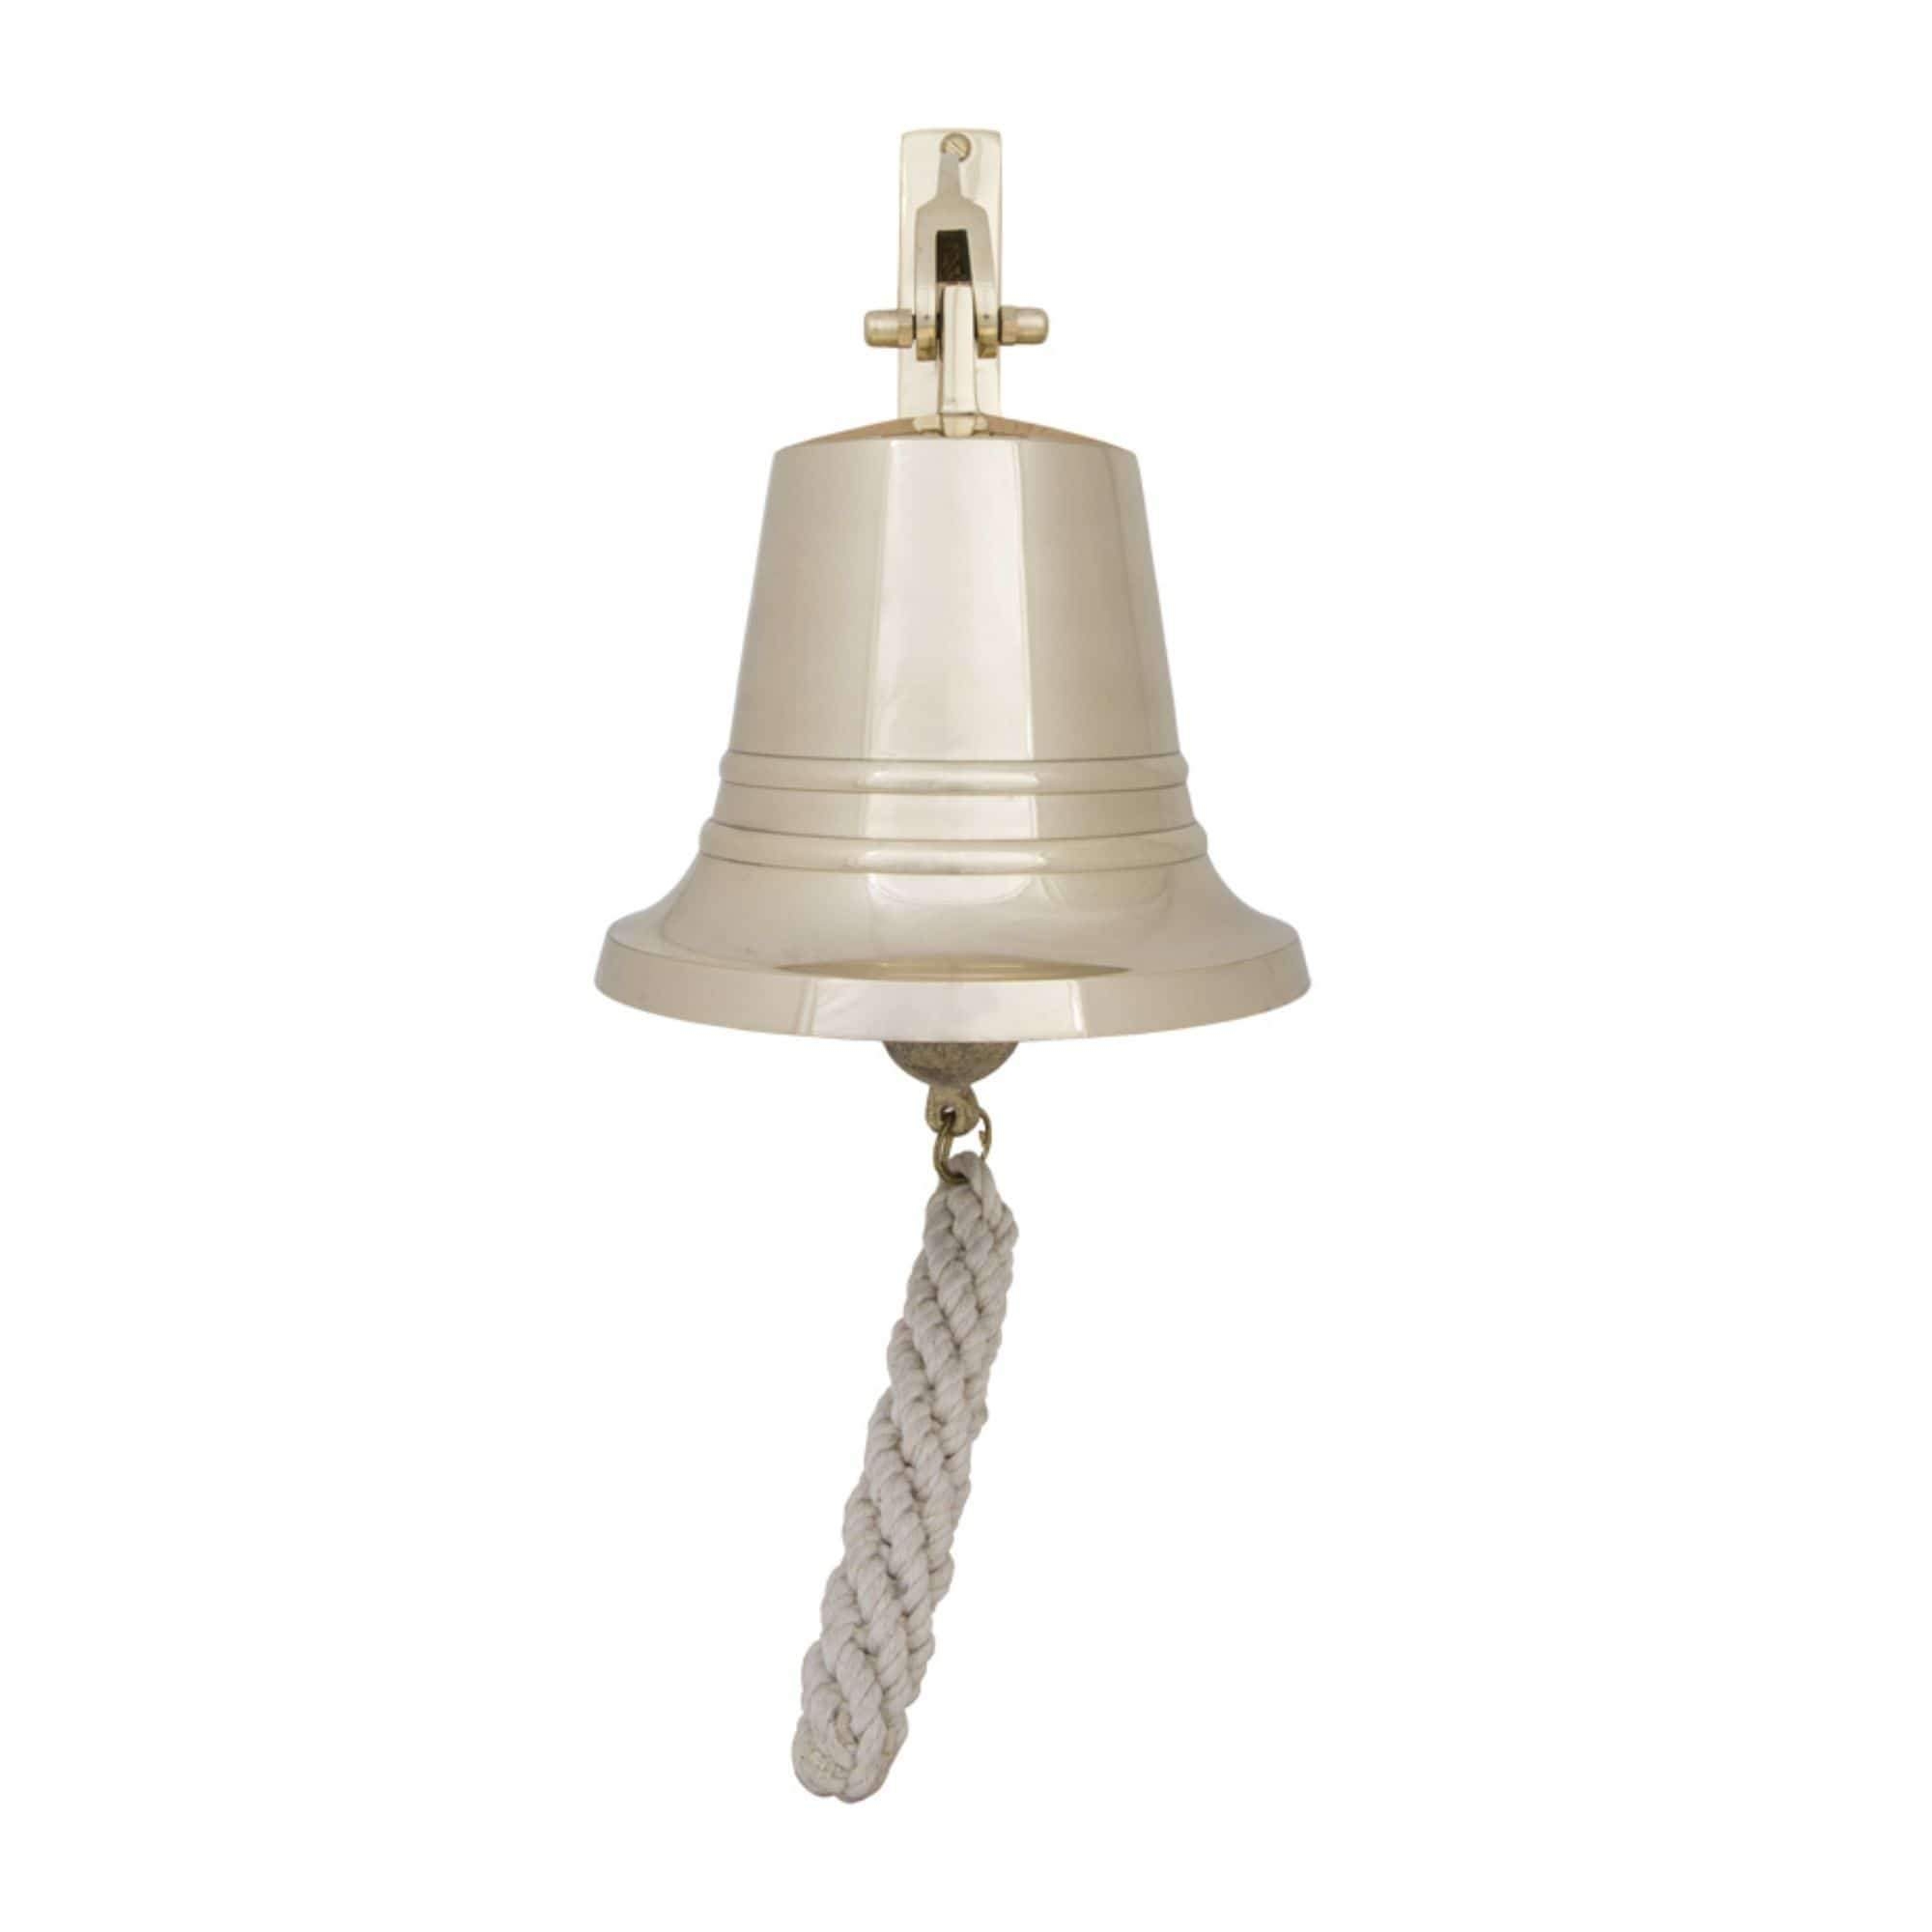 Bell – Solid Brass – 15 cm